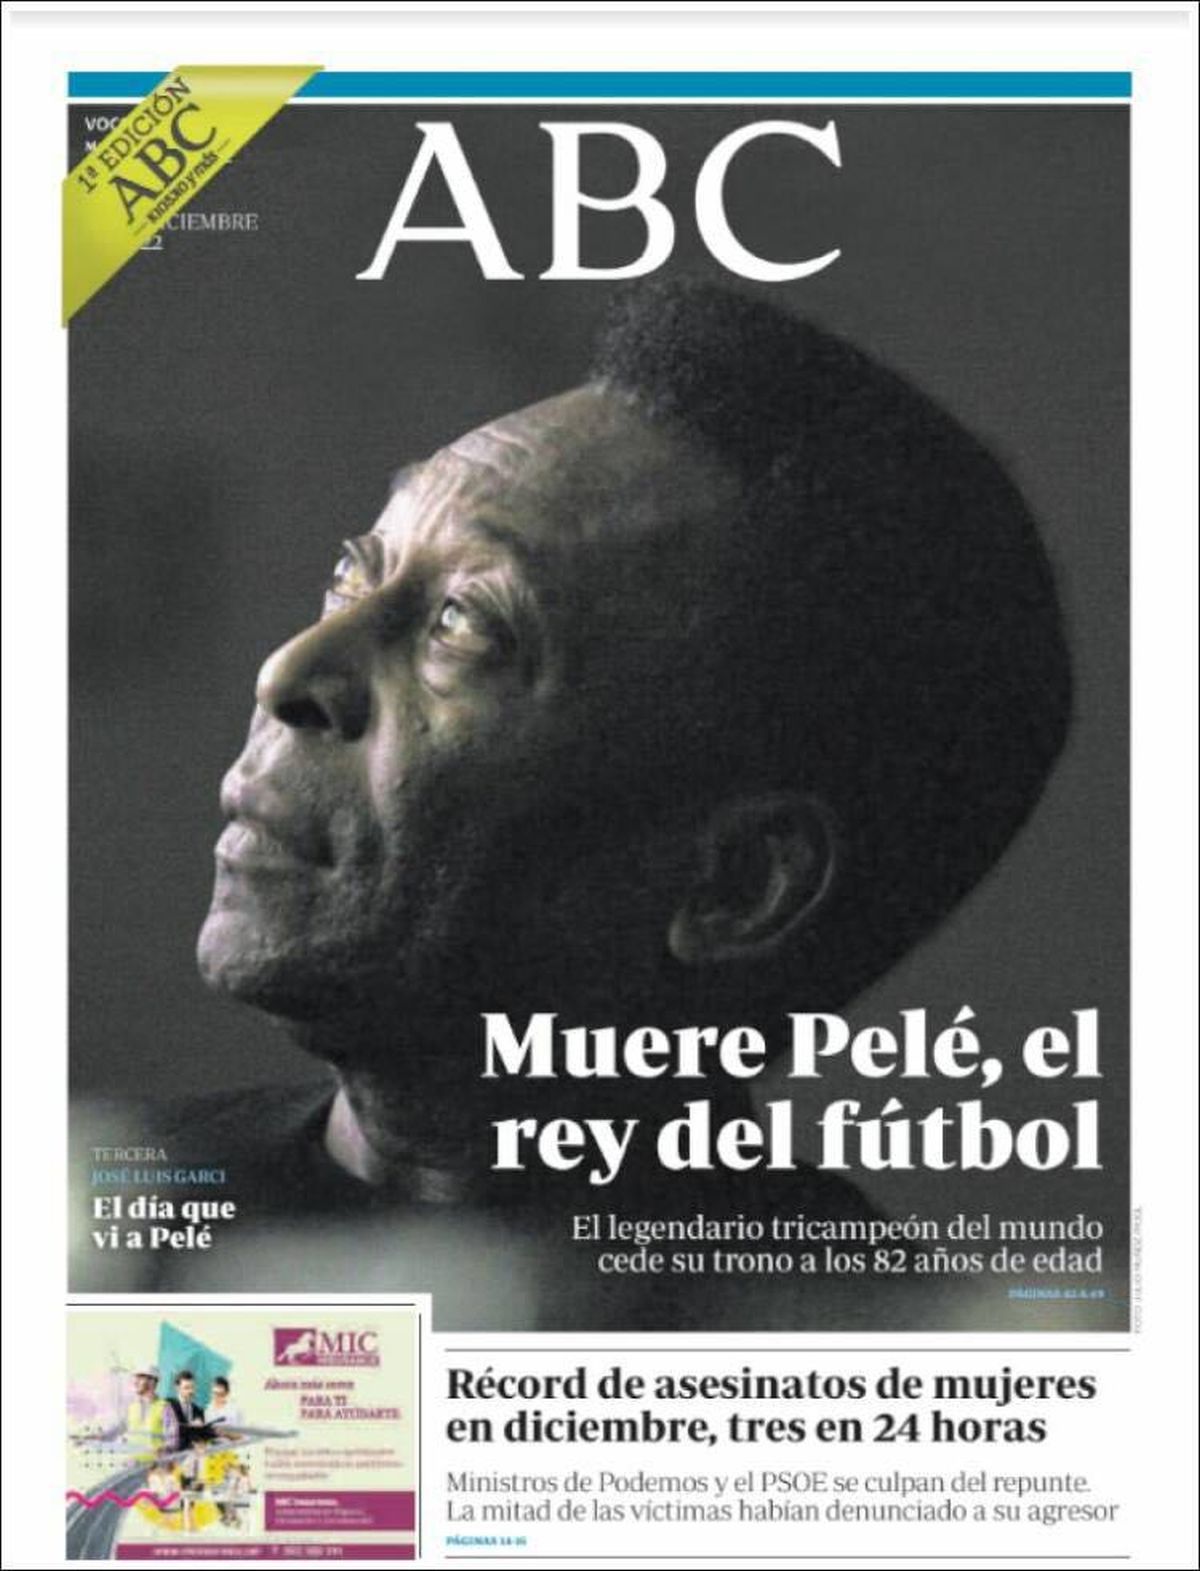 „Niciodată patru litere n-au fost atât de mari” » Cele mai prestigioase publicații ale lumii îi dedică pagini emoționante lui Pelé